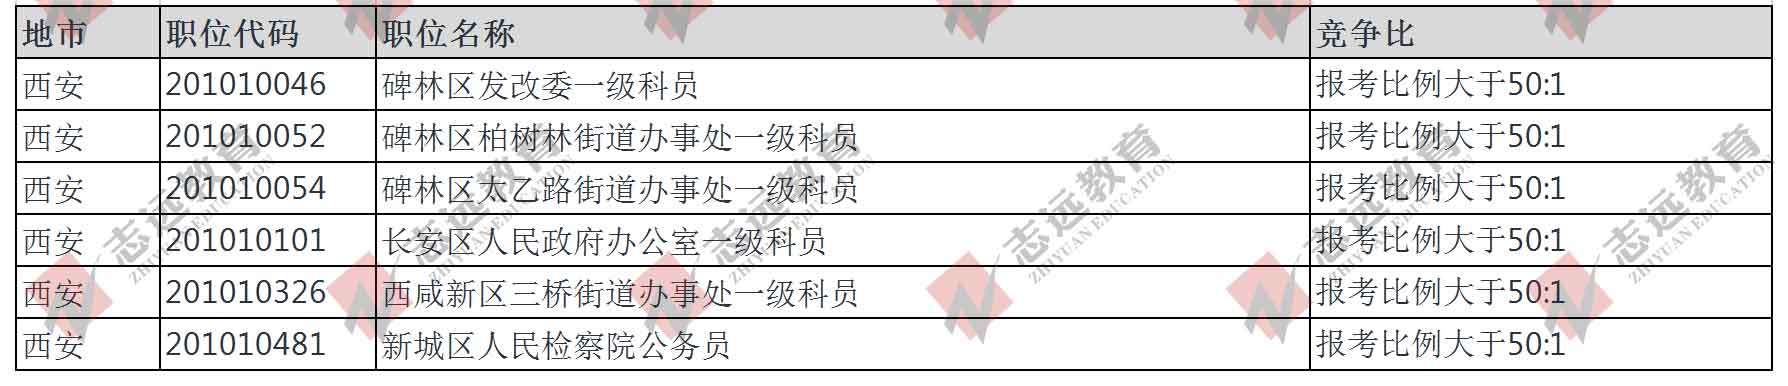 （截至30日10时）报名人数统计:2020陕西省考西安市竞争比较高职位(图1)